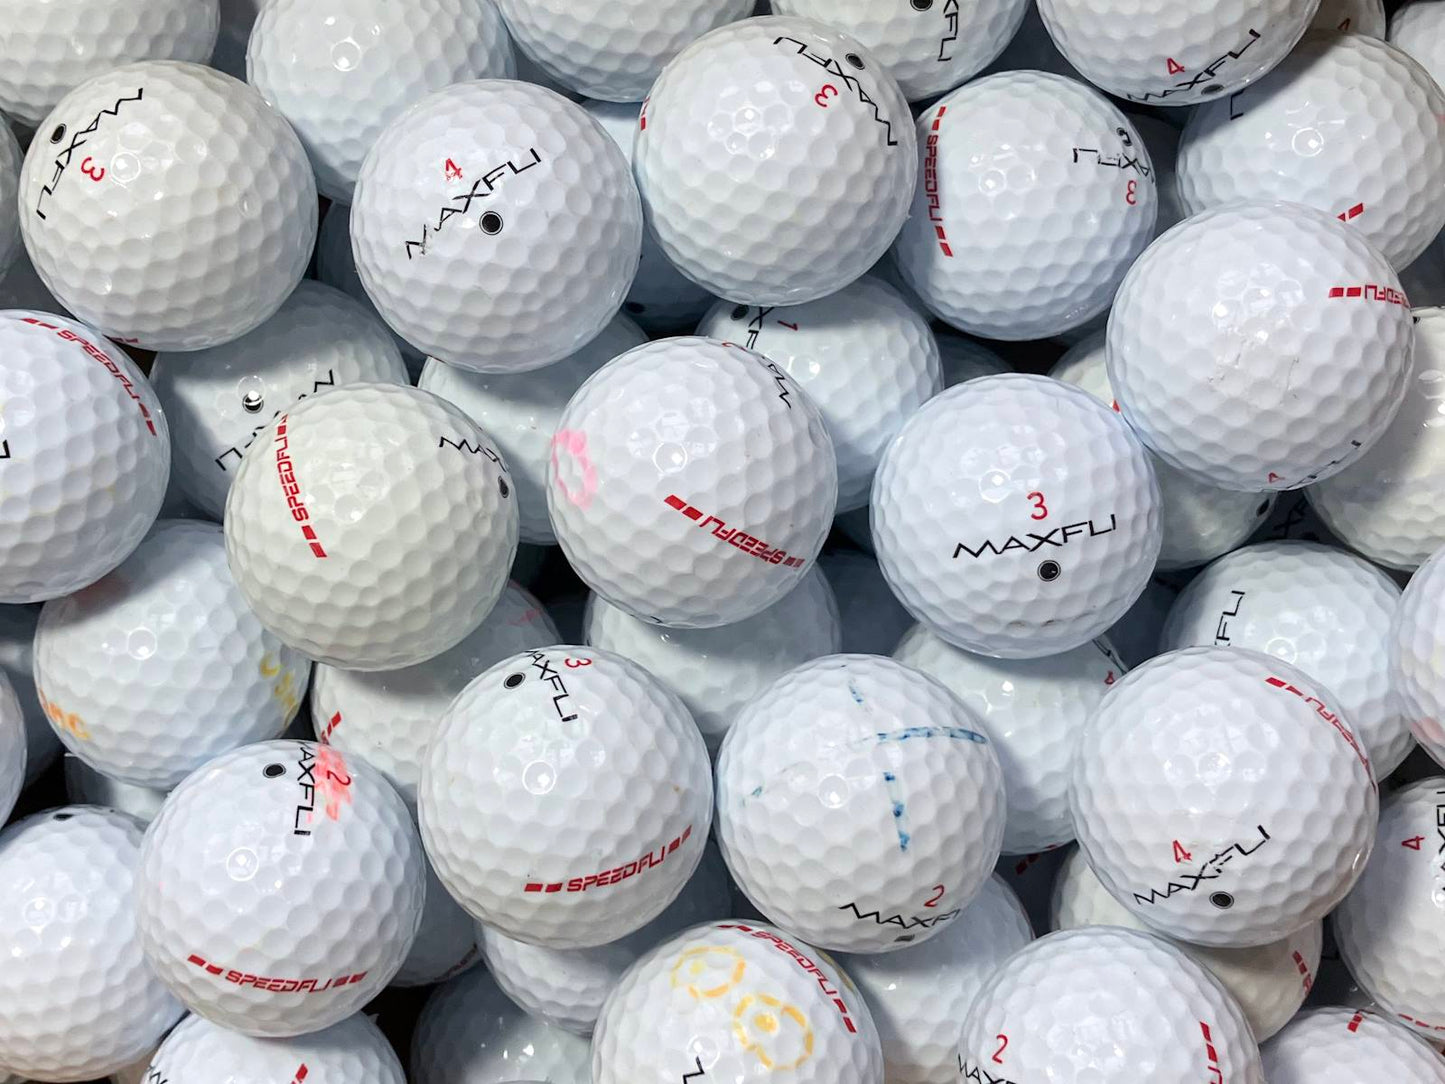 Maxfli SpeedFli Lakeballs - gebrauchte SpeedFli Golfbälle AA/AAA-Qualität